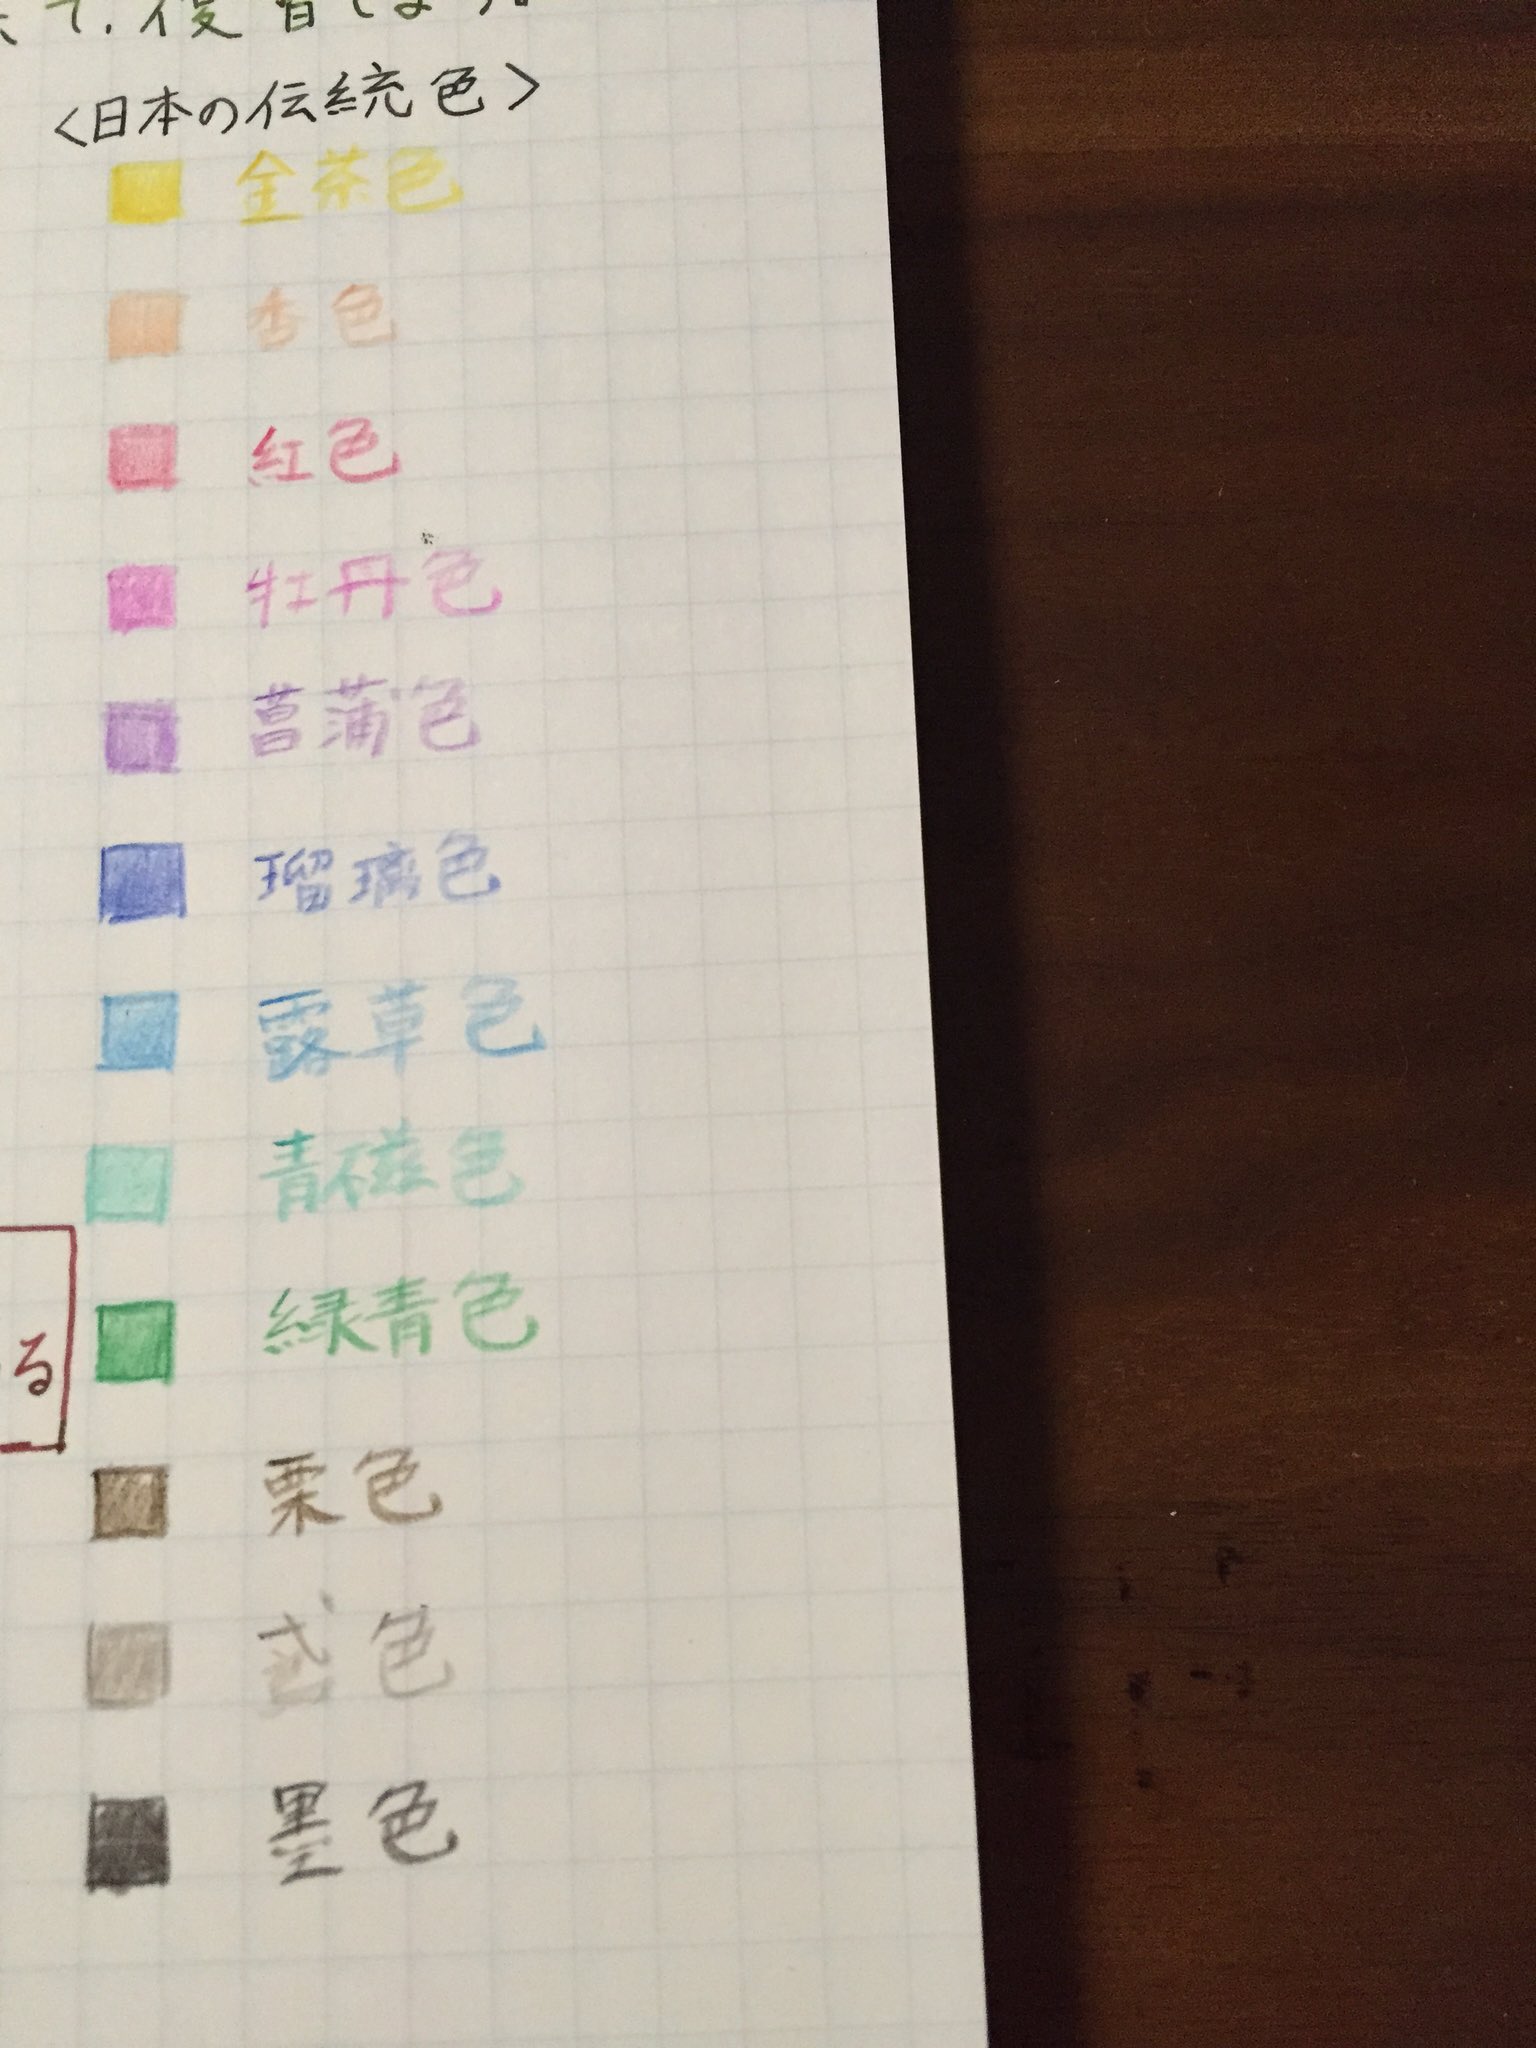 綺鱗舎 土佐錦魚始めました A Twitter セリアで見つけた 日本の伝統色色鉛筆 日記用に色見本を 手帖 色鉛筆 文房具 おうちノート部 日本の伝統色